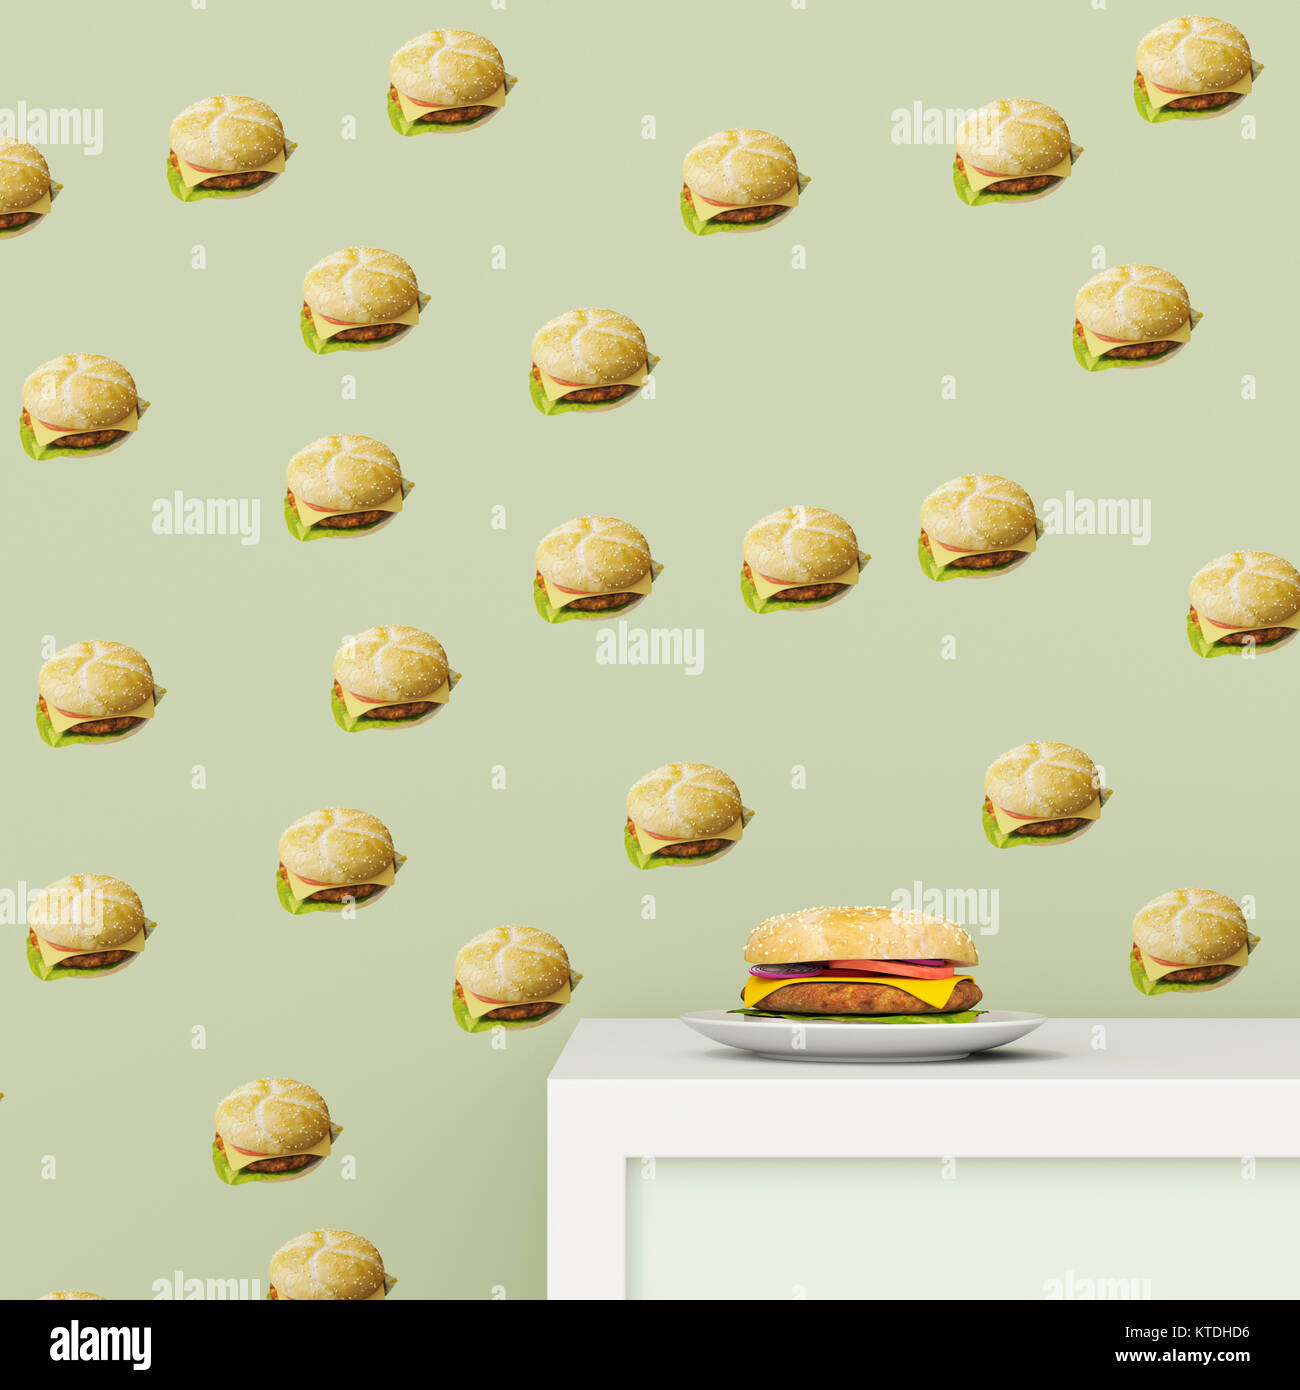 Piastra con Hamburger sulla tazza di bordo nella parte anteriore della carta da parati con Hamburger pattern, rendering 3D Foto Stock